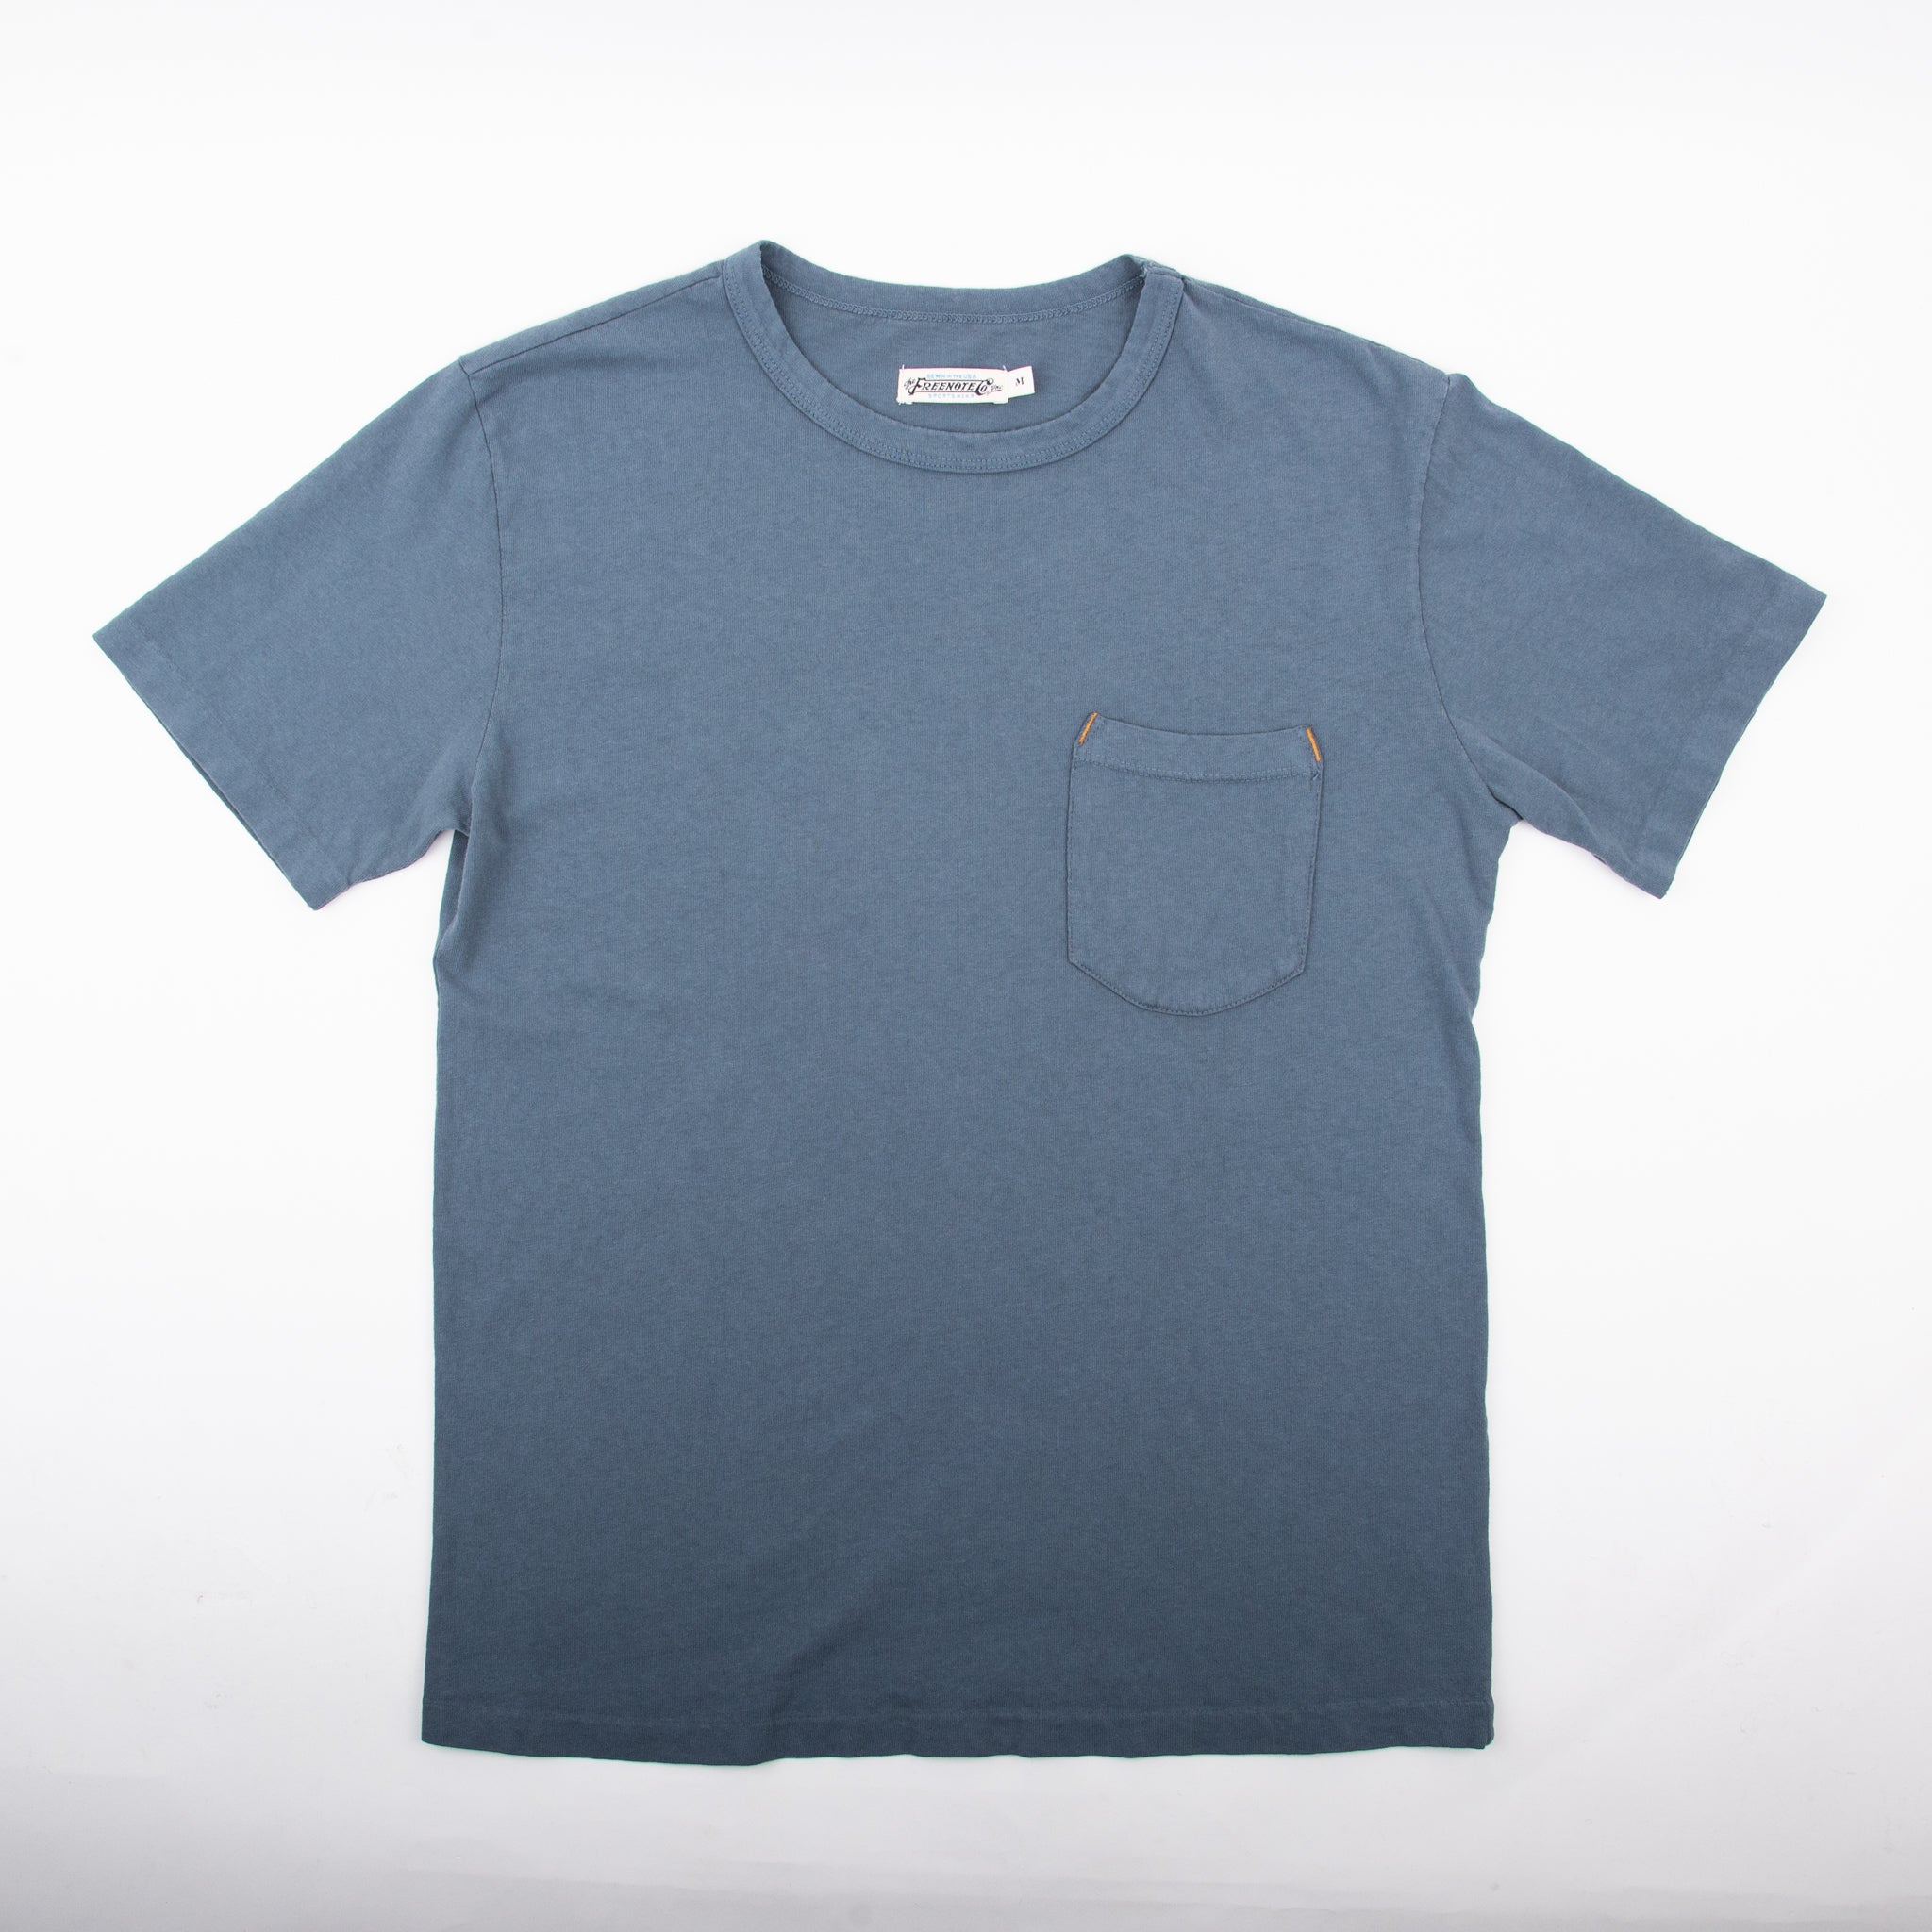 Shop Wilkes Light Blue Shirt Online